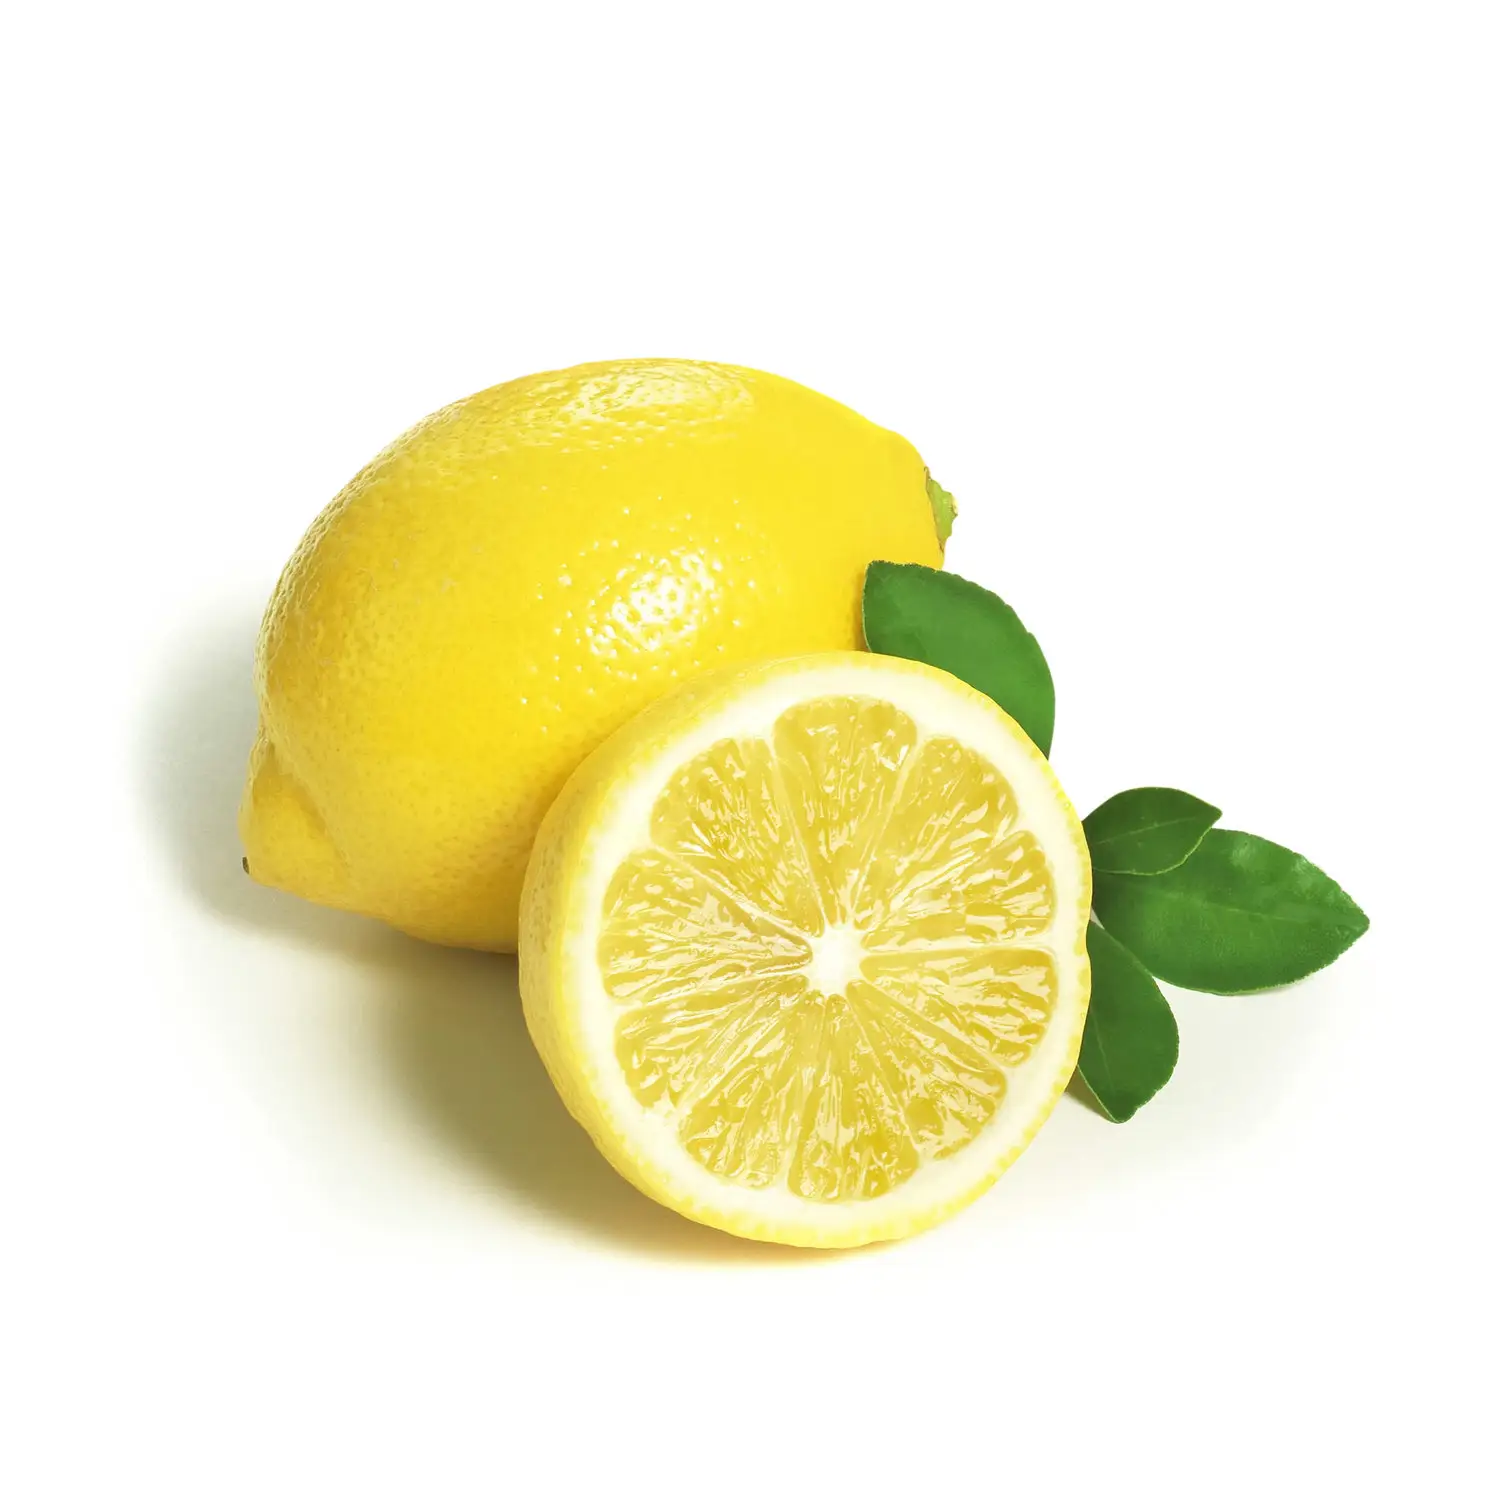 Compra 100% Natural, producto de alta calidad, venta al por mayor, limones amarillos frescos a granel